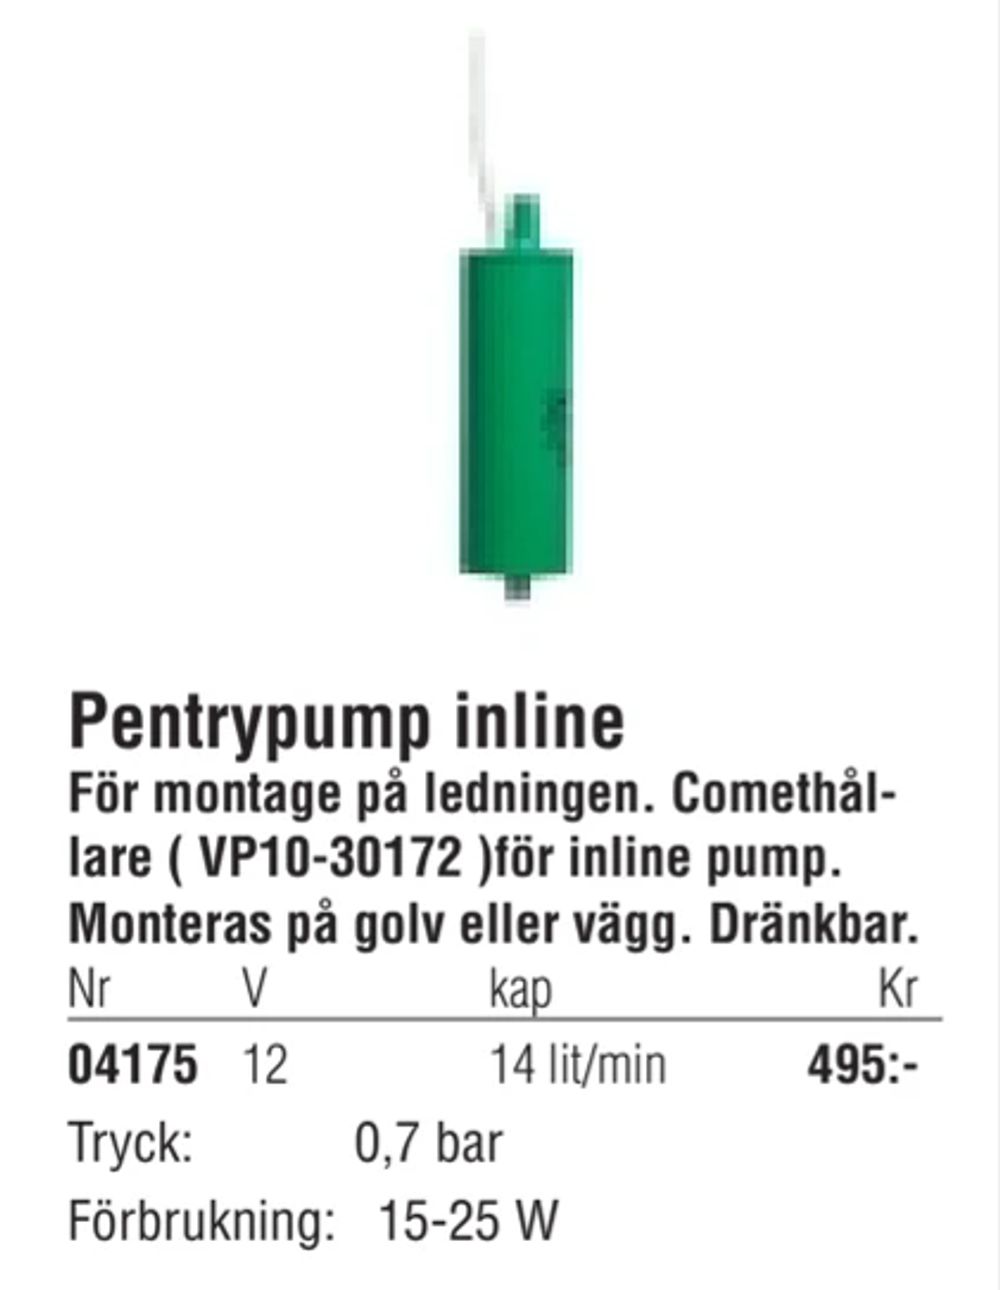 Erbjudanden på Pentrypump inline från Erlandsons Brygga för 495 kr